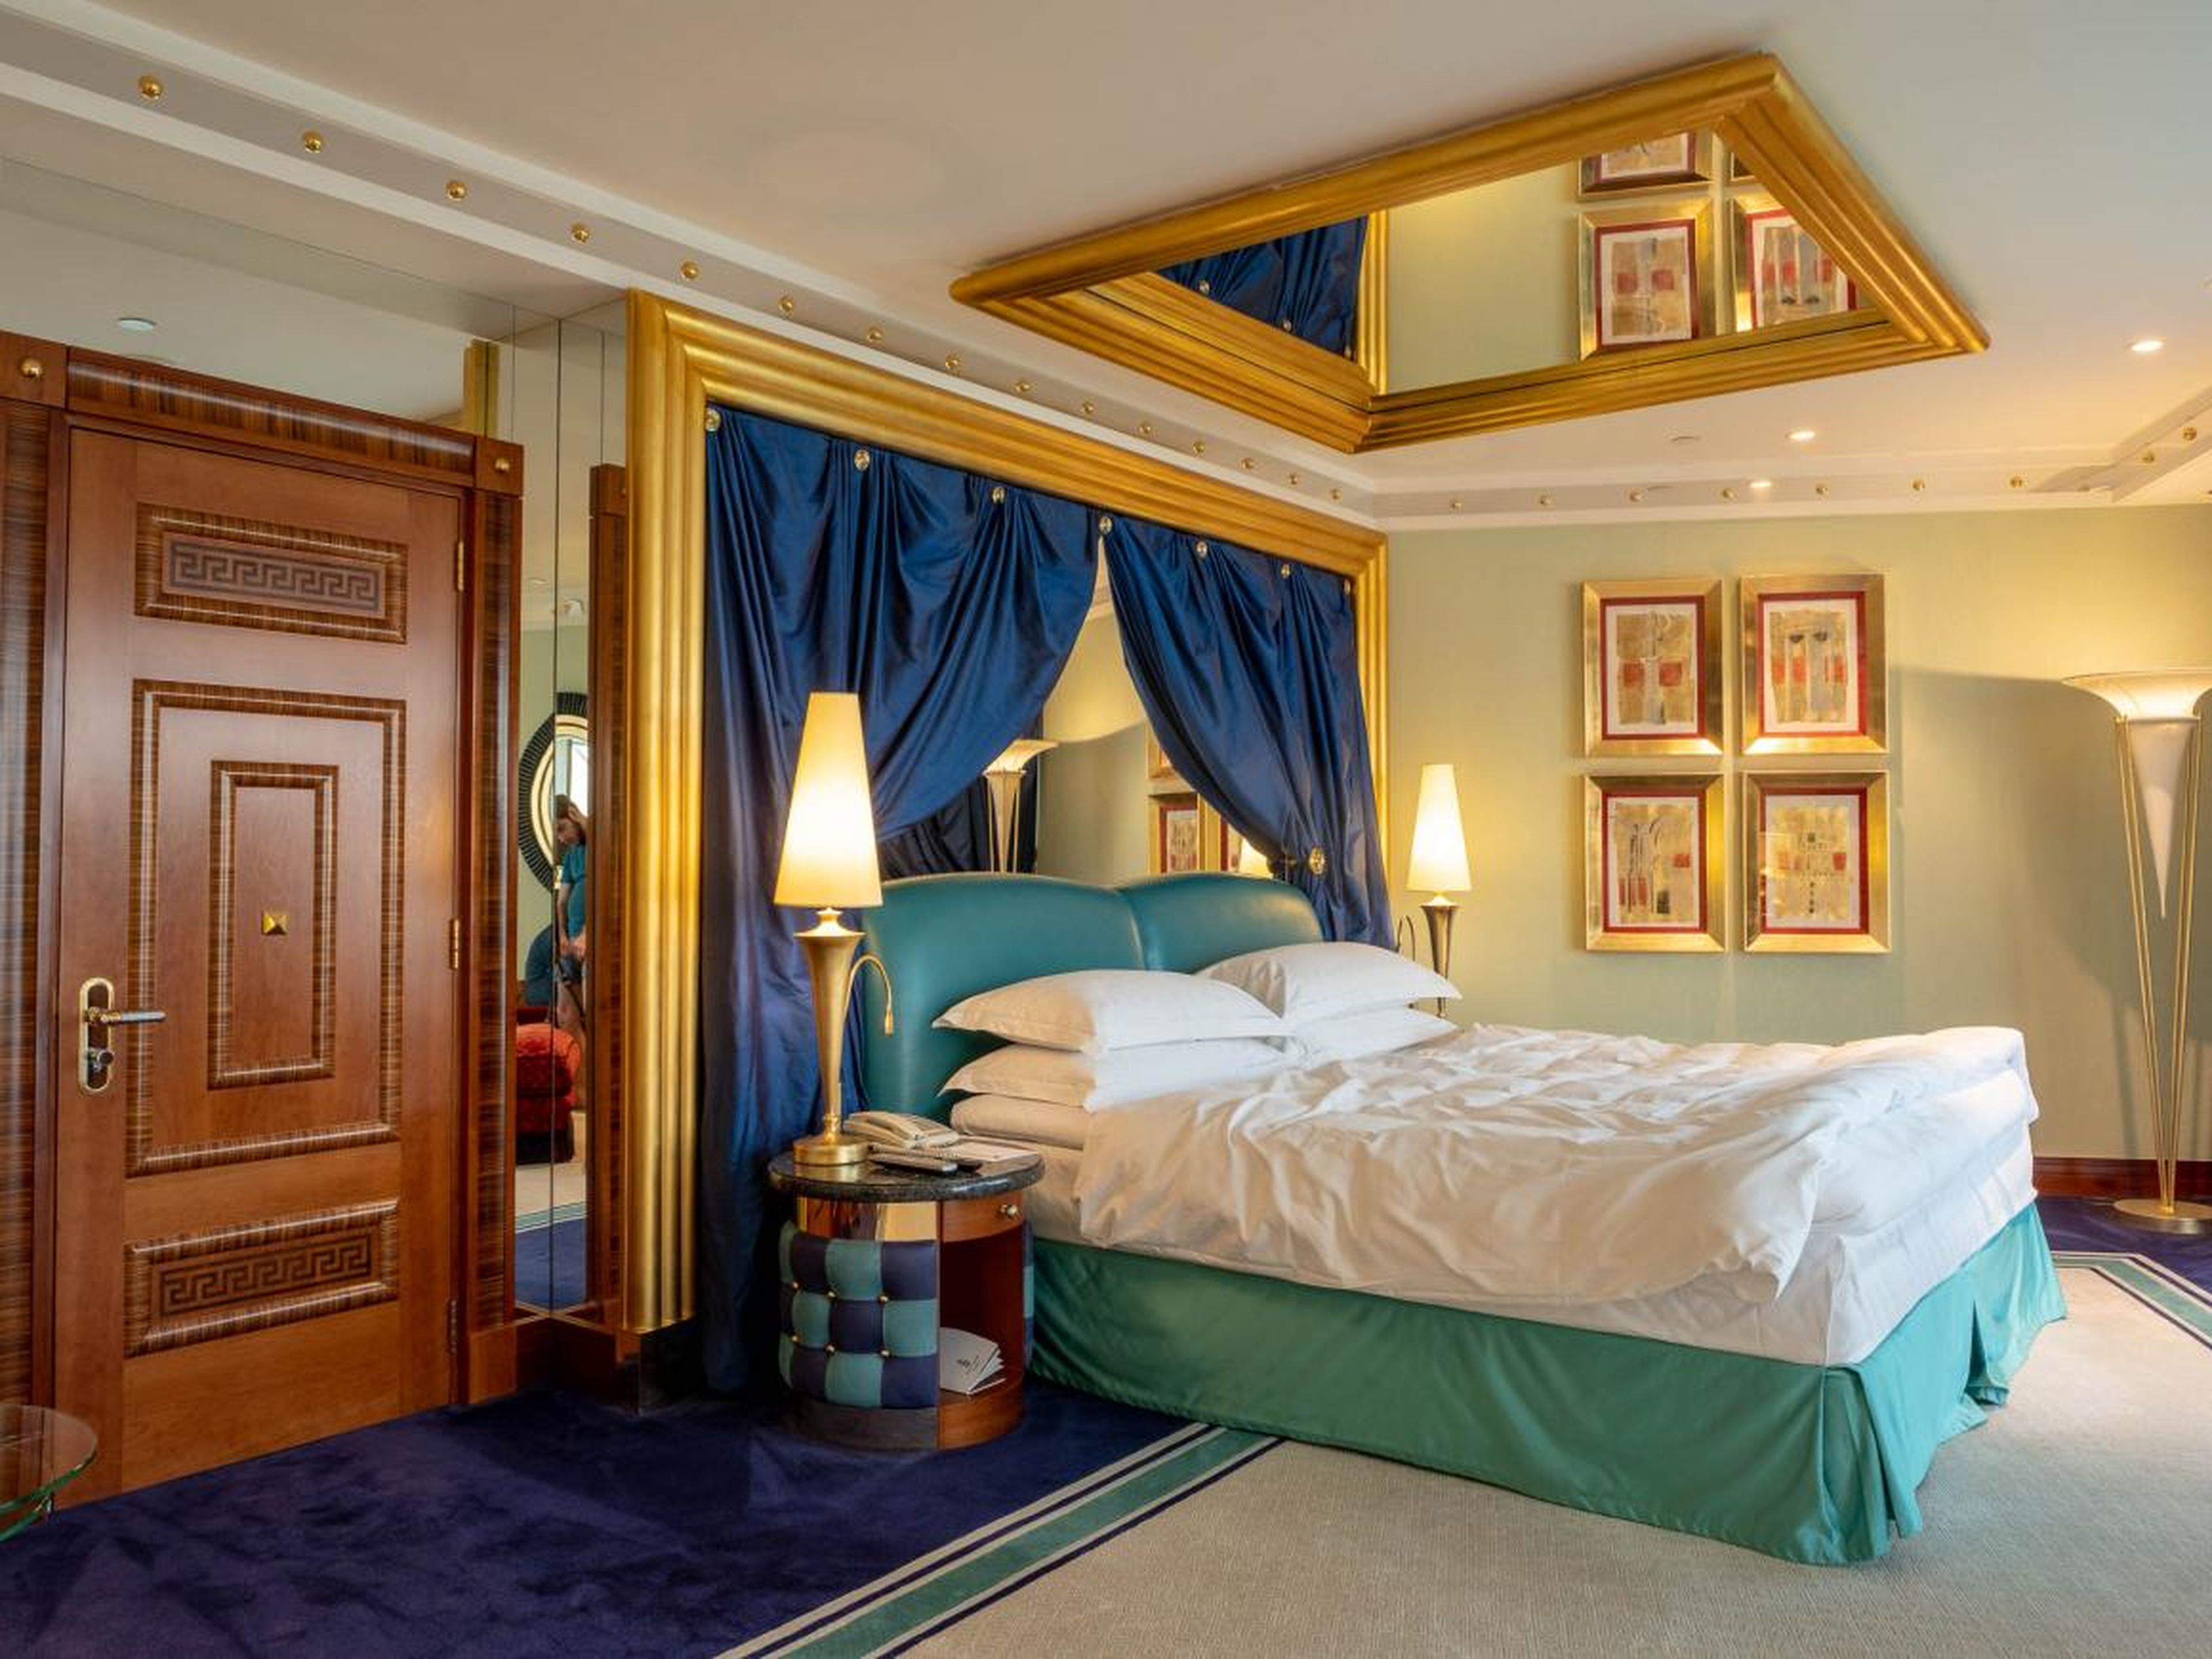 Una habitación en el Burj Al Arab, el "primer hotel de siete estrellas" del mundo.